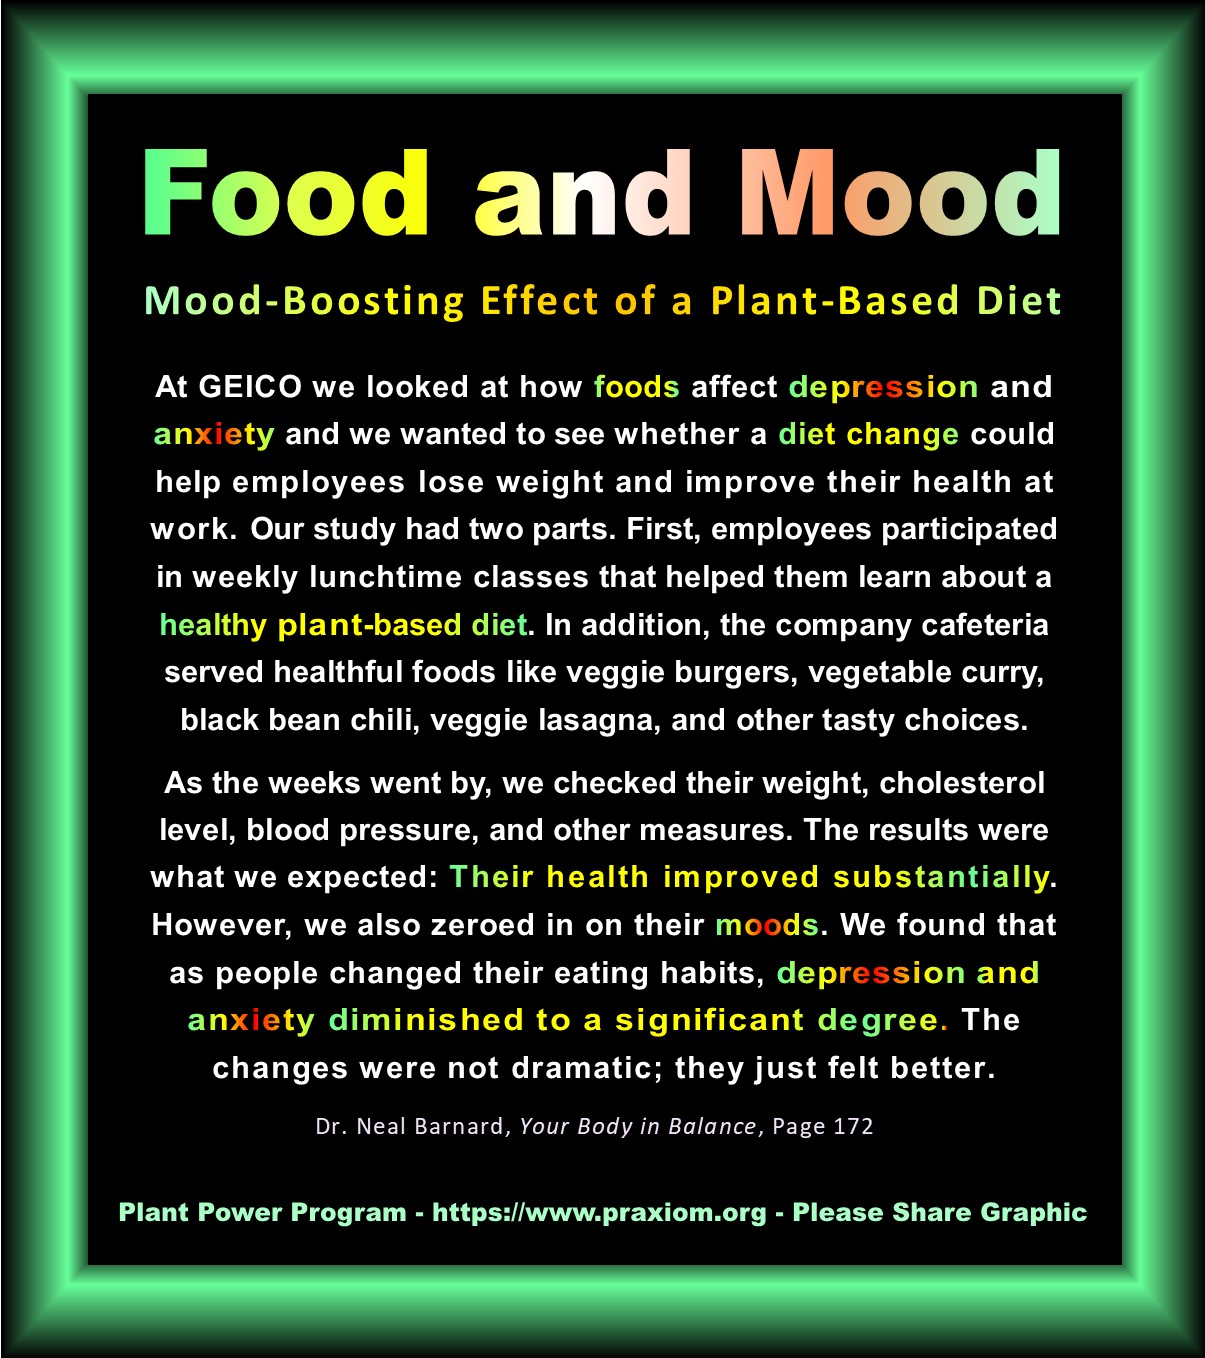 Food and Mood - Dr. Neal Barnard